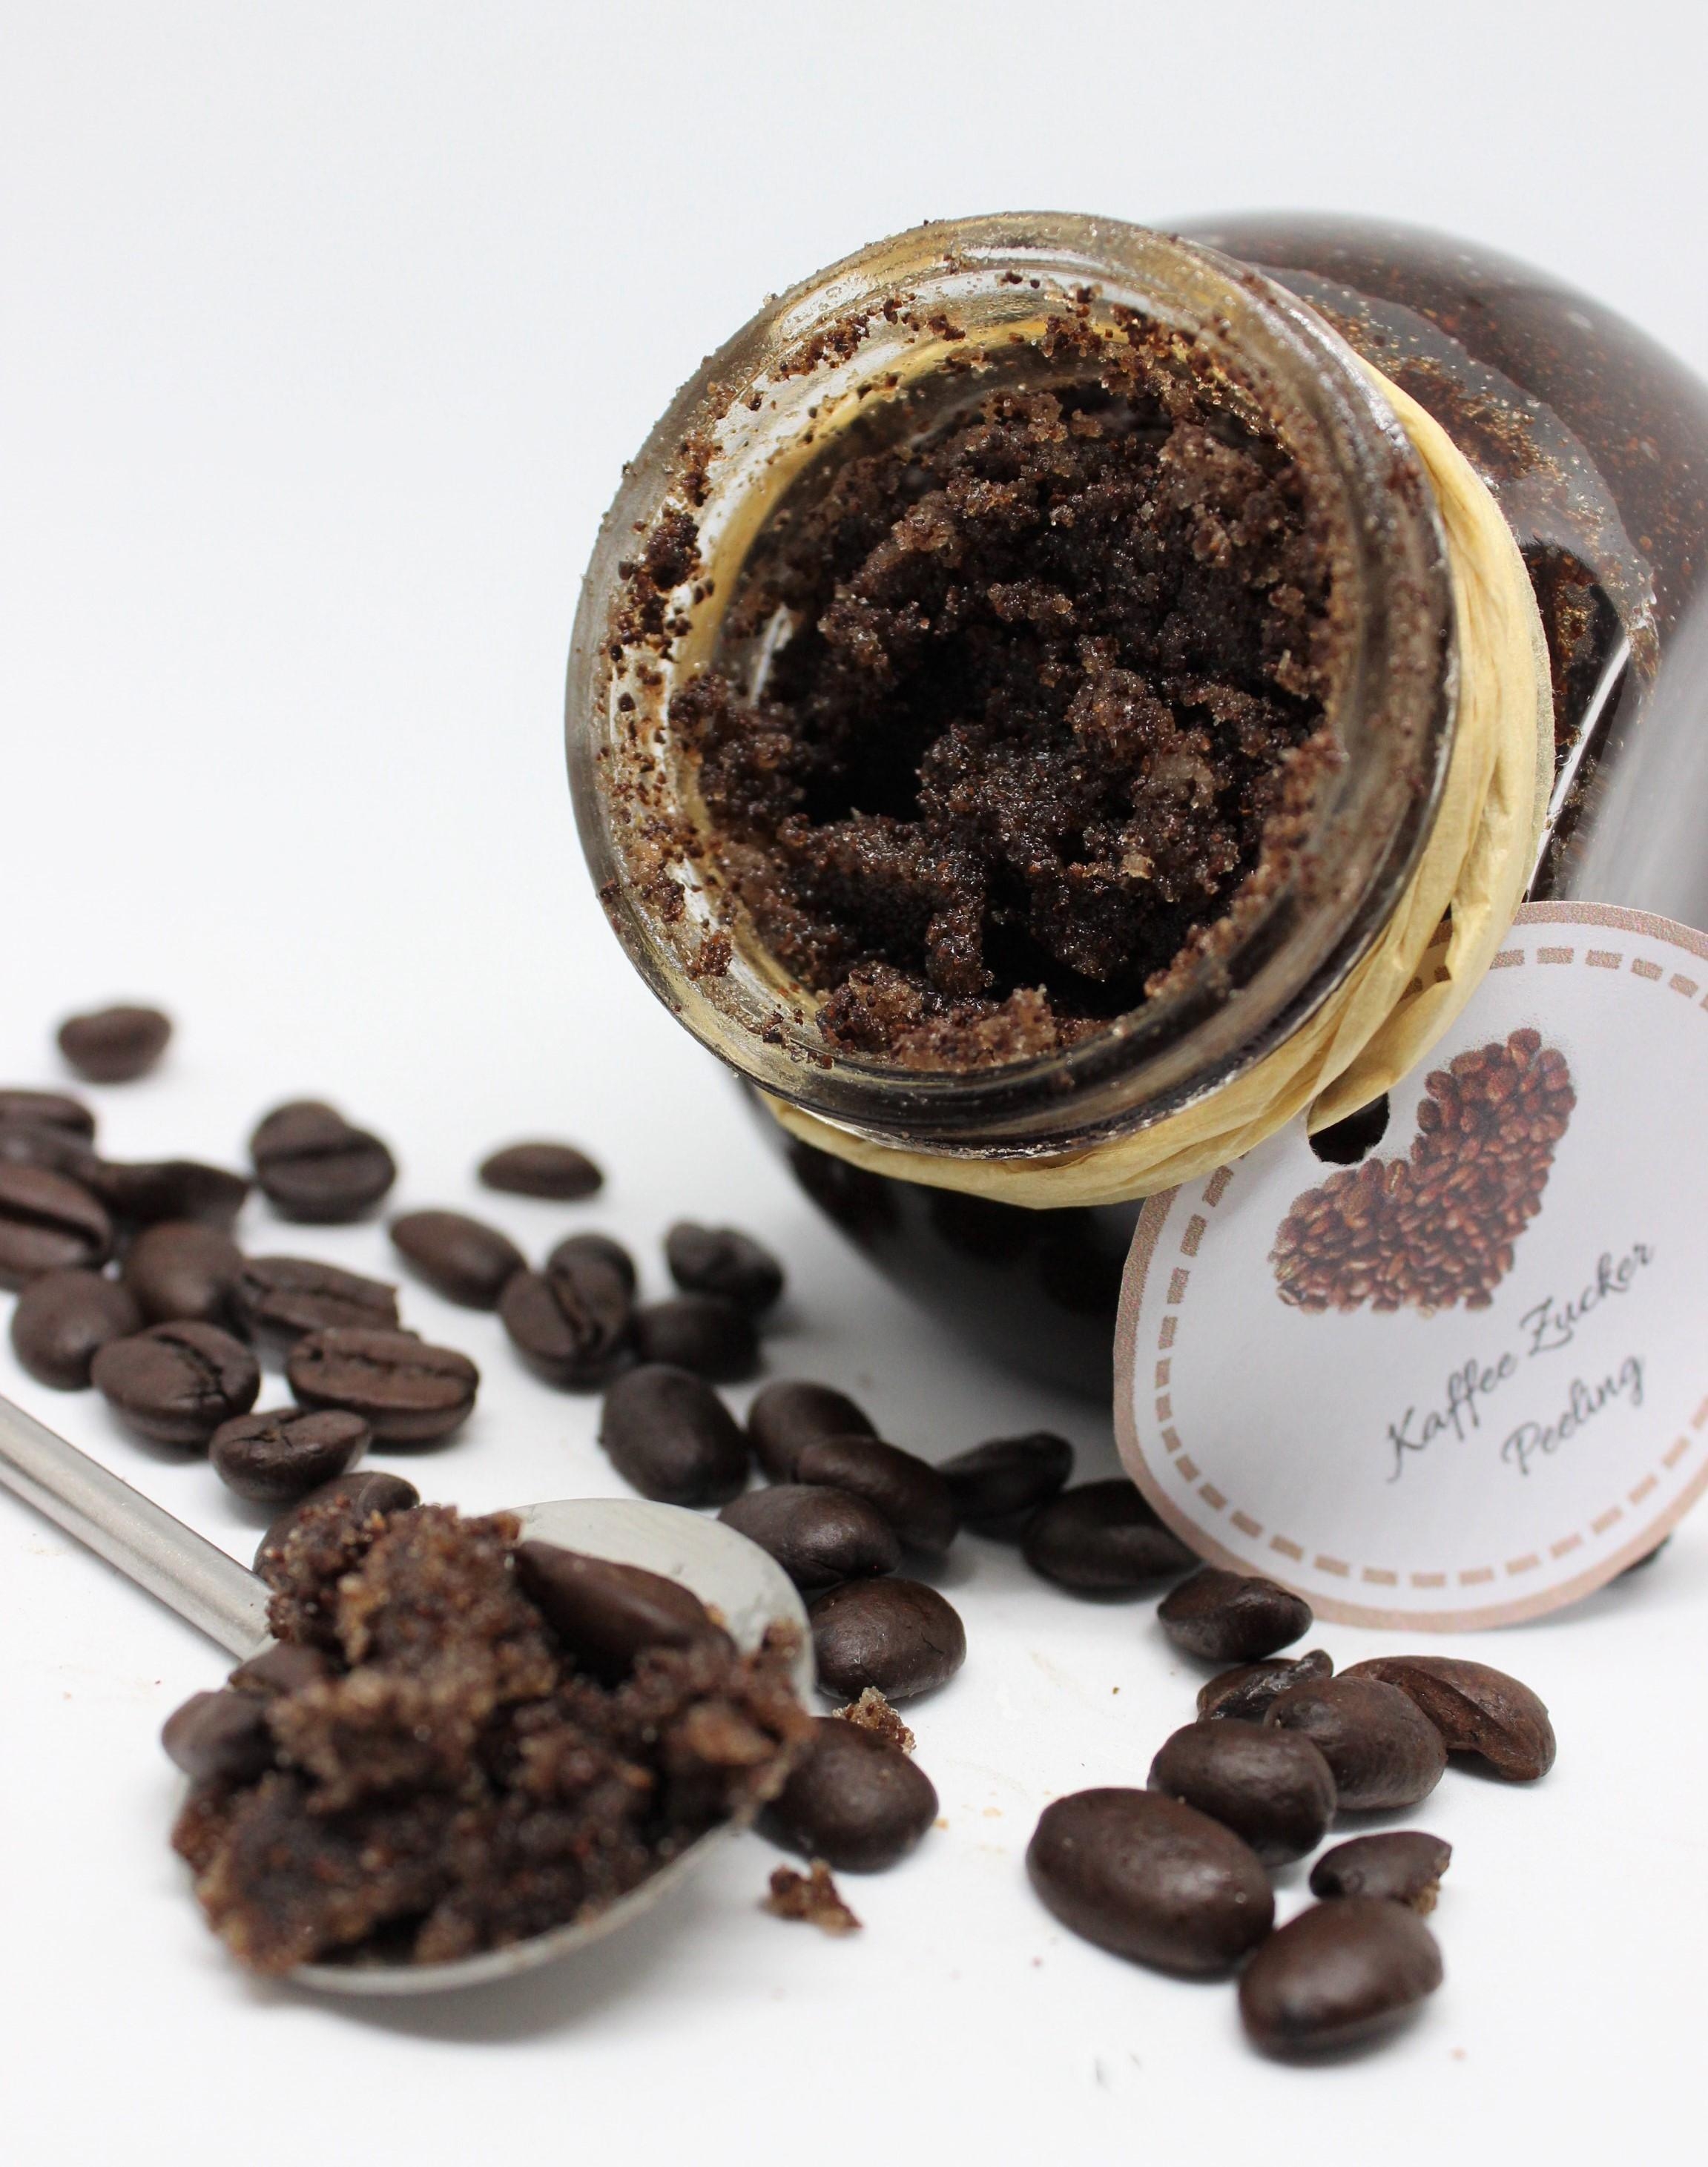 Mein Beitrag zur #diybeauty ist mein geliebtes Kaffee Peeling! Es pflegt die Haut einfach so gut und ich mag den Geruch.